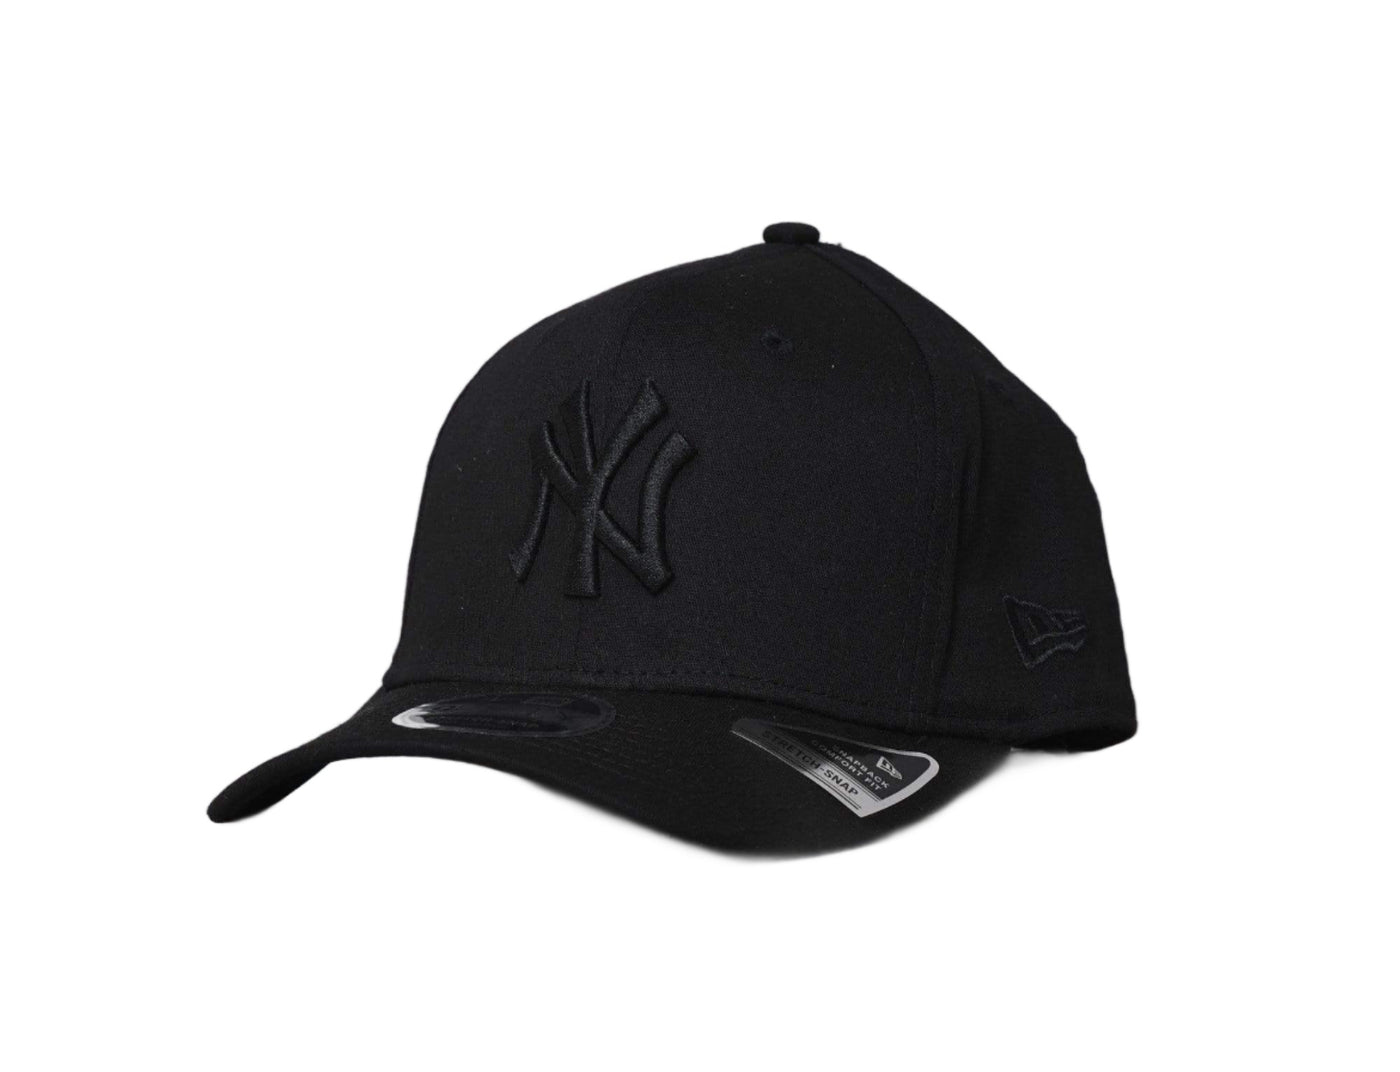 Cap Snapback NY Yankees Snapback Cap Black 9FIFTY Stretch-Snap - New Era New Era